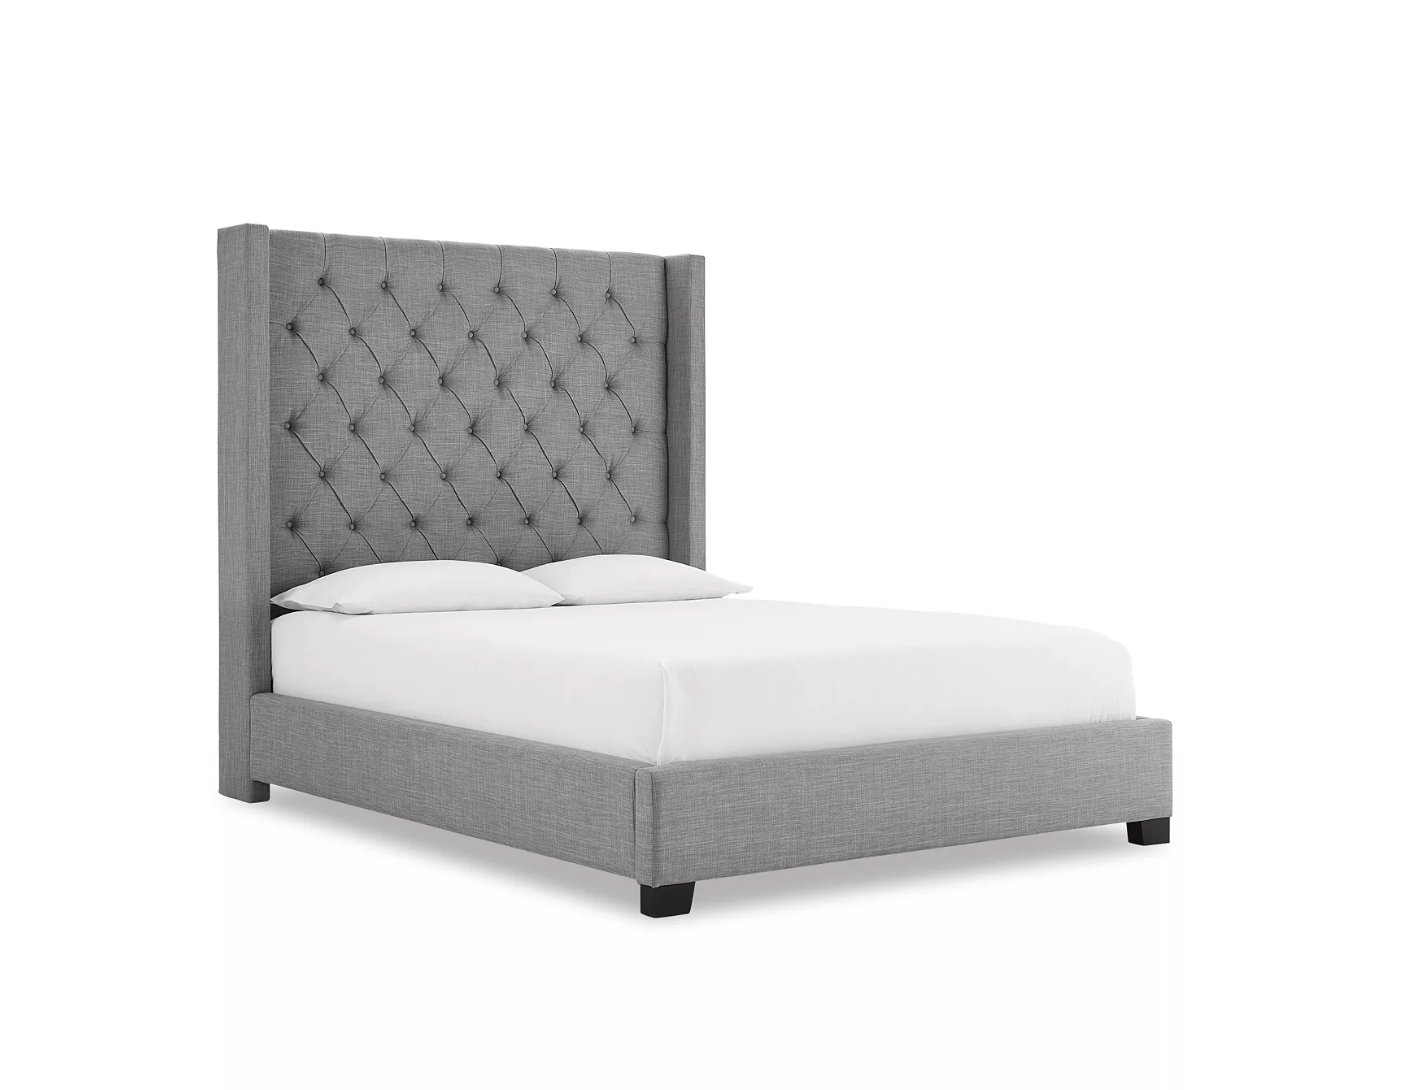 NightTight™ Queen Bed Sheet Set